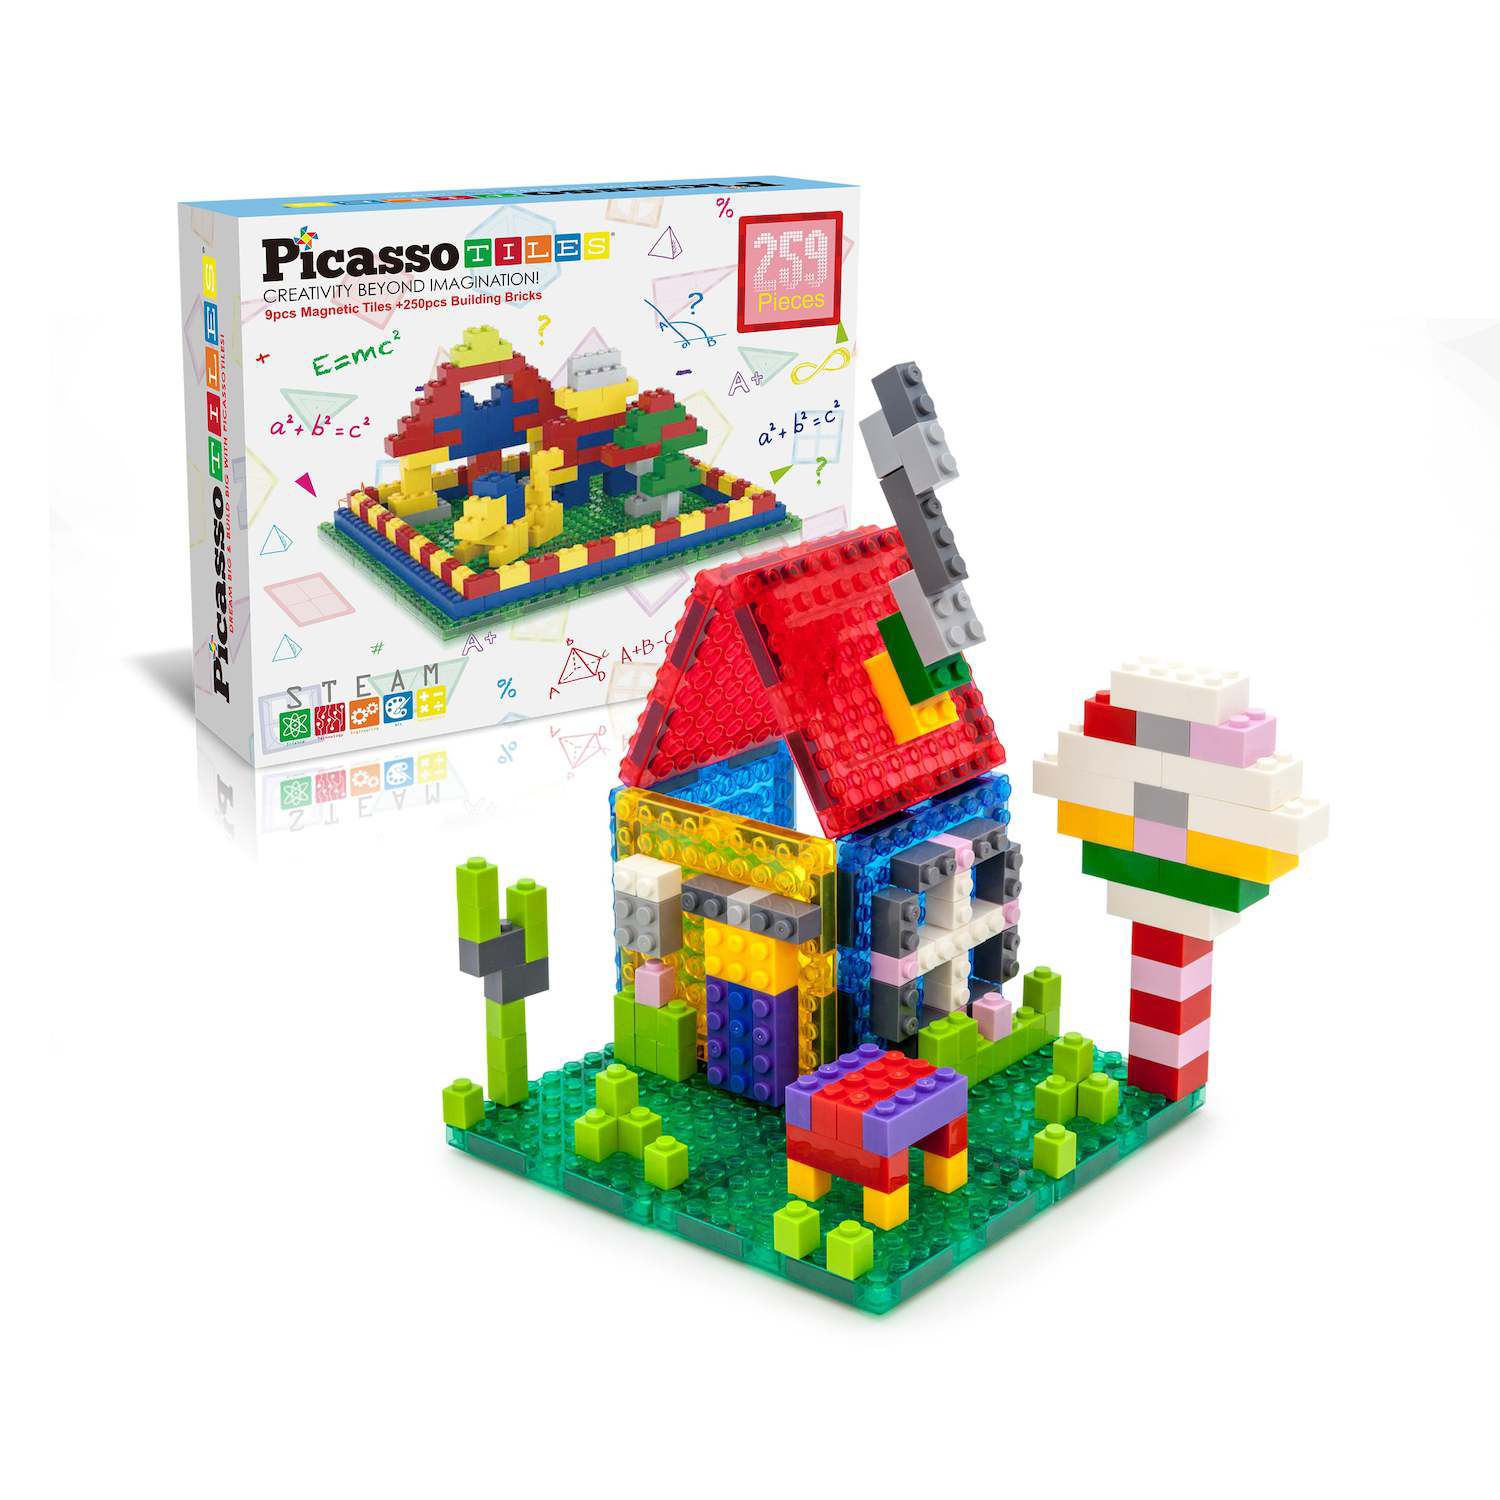 PicassoTiles 152pcs Clear Magnetic Building Tiles Toy Set